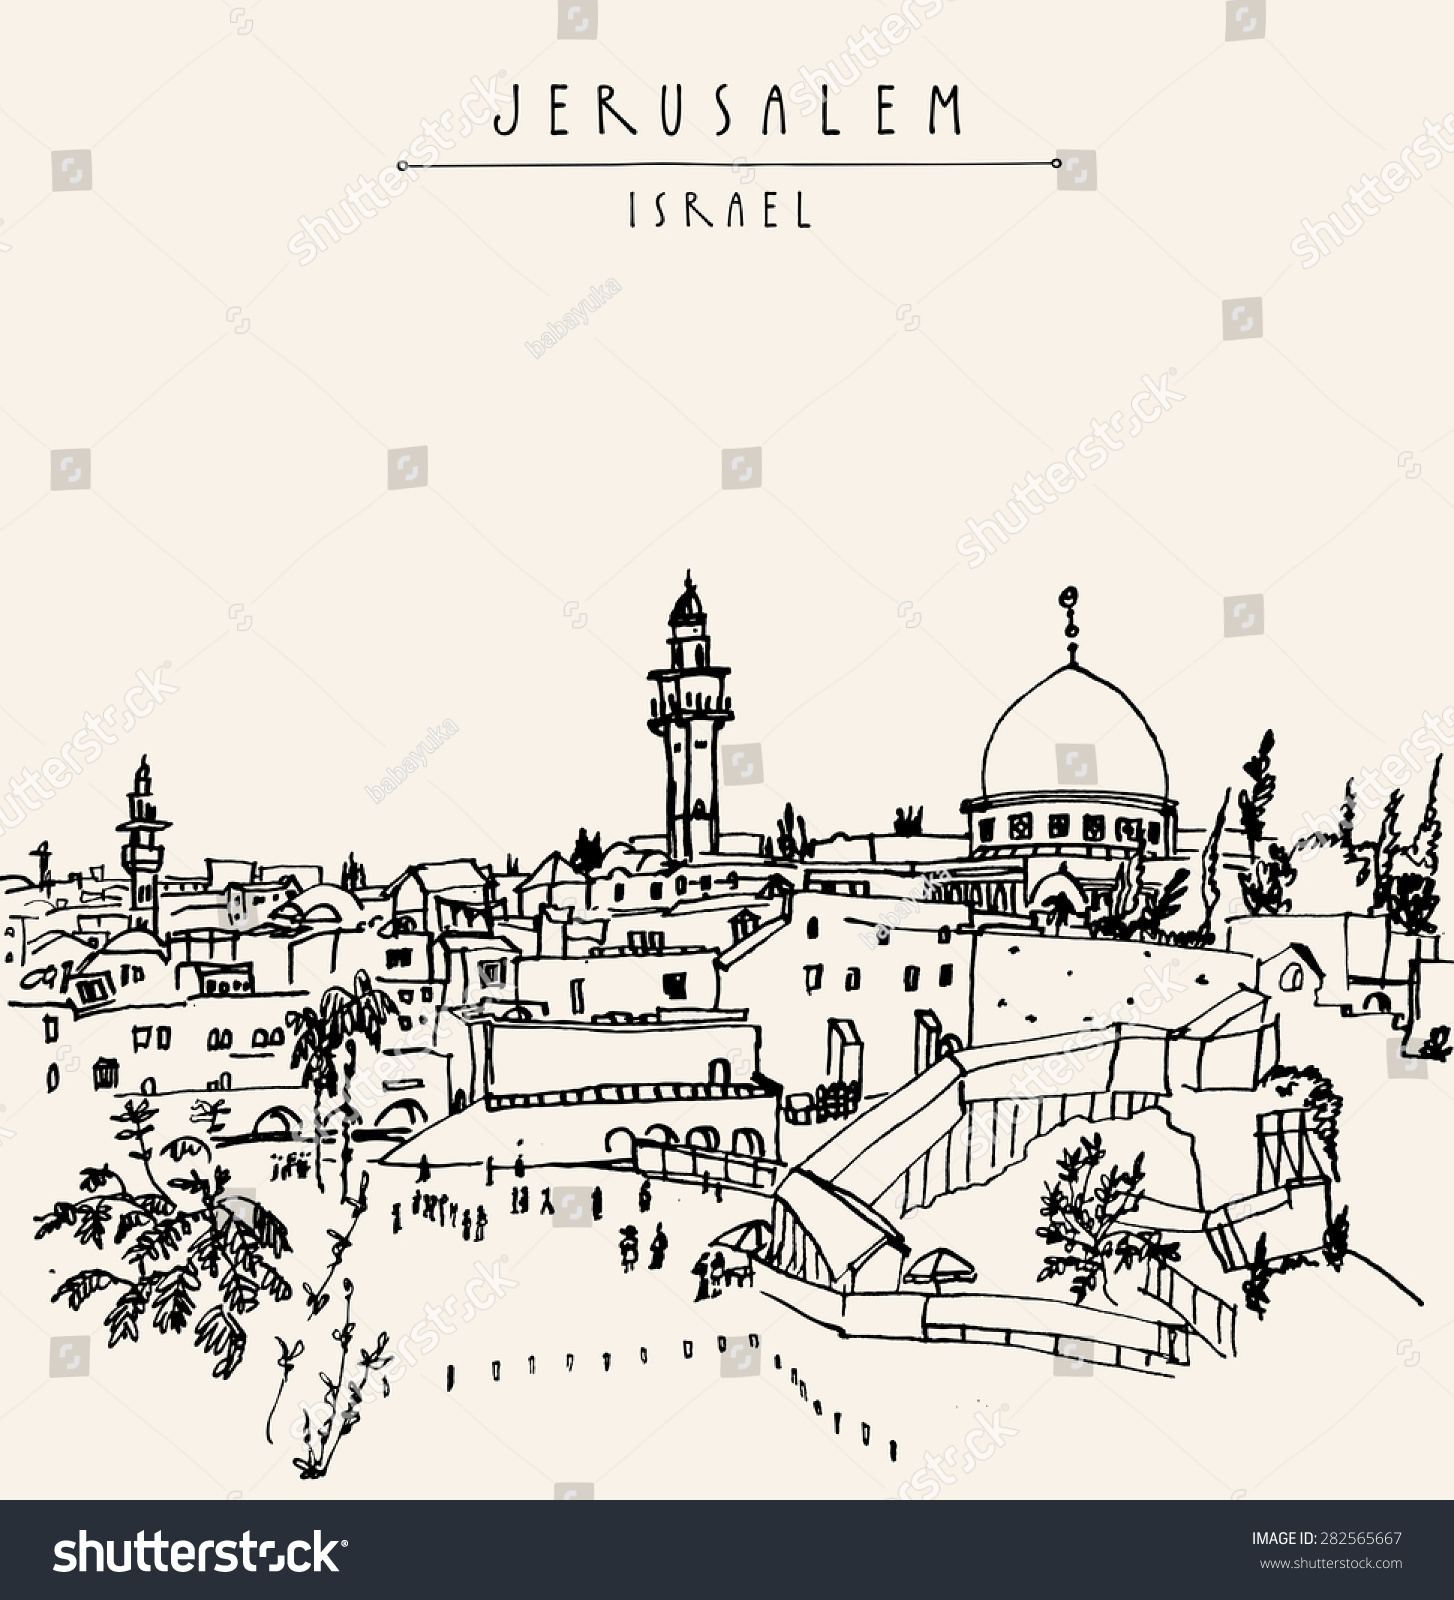 clipart city of jerusalem - photo #28